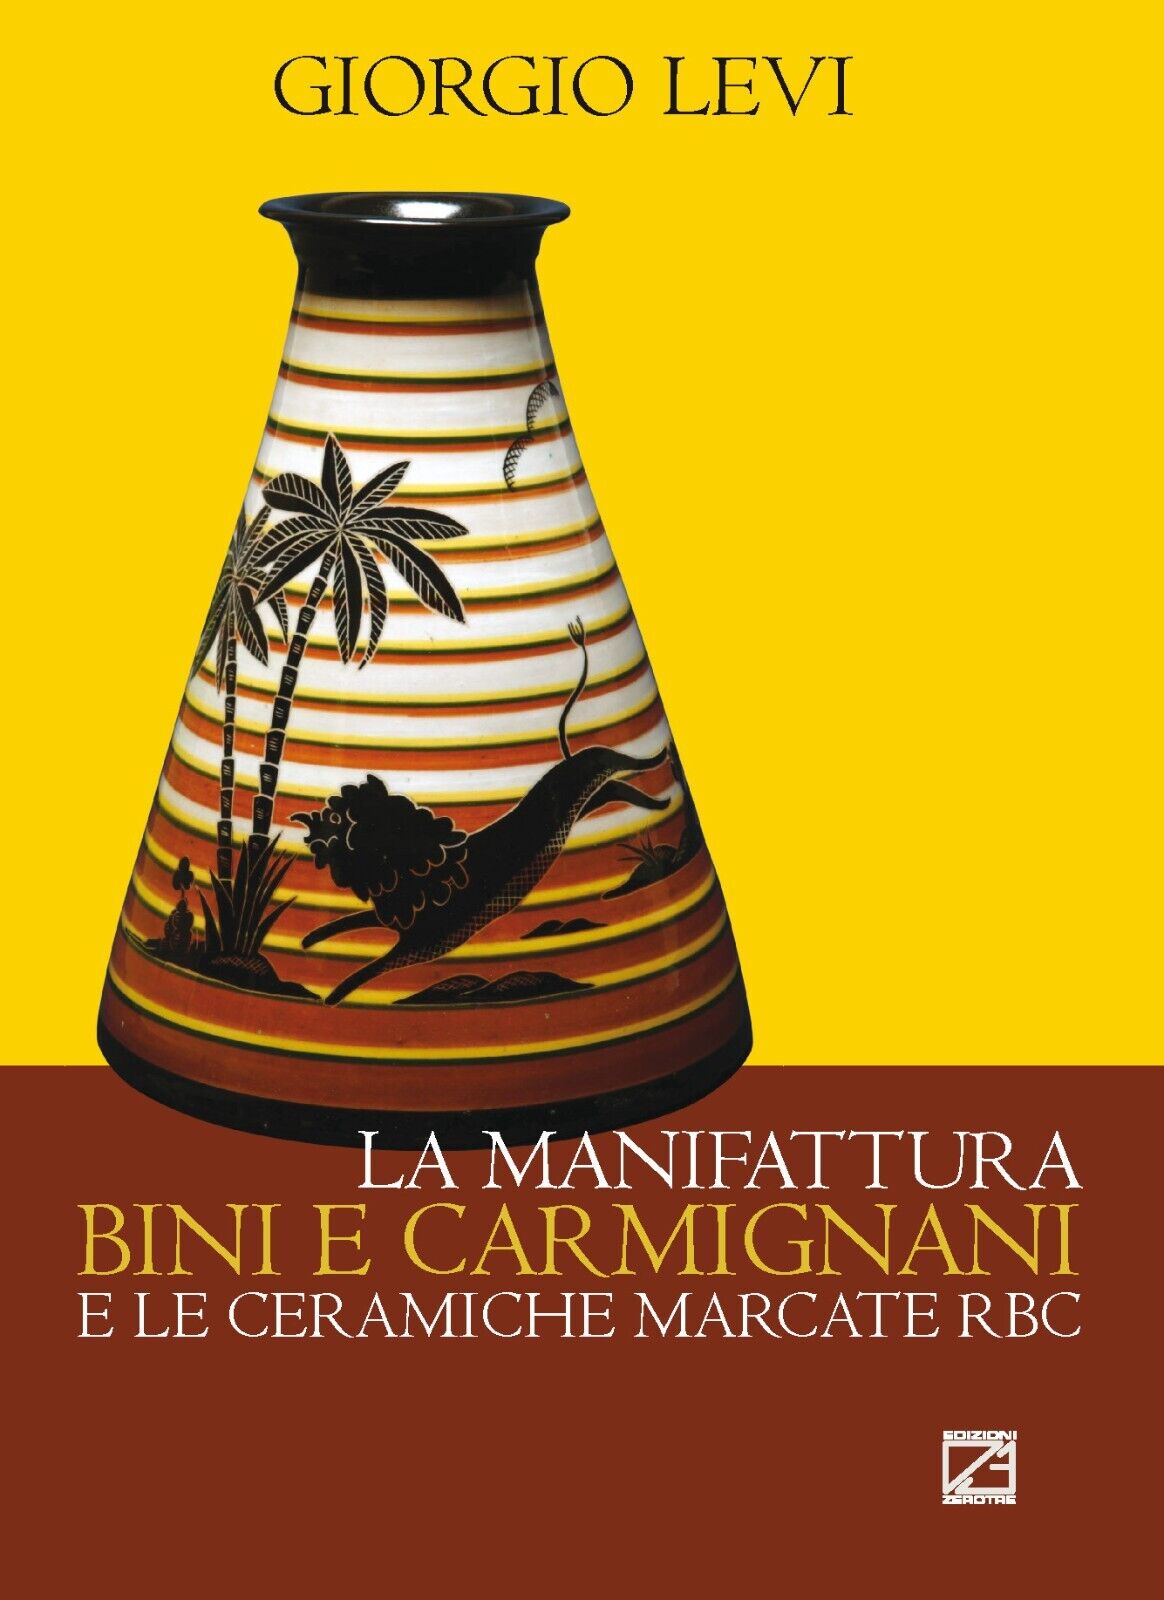 La manifattura Bini e Carmignani e le ceramiche marcate RBC di Giorgio Levi, 2